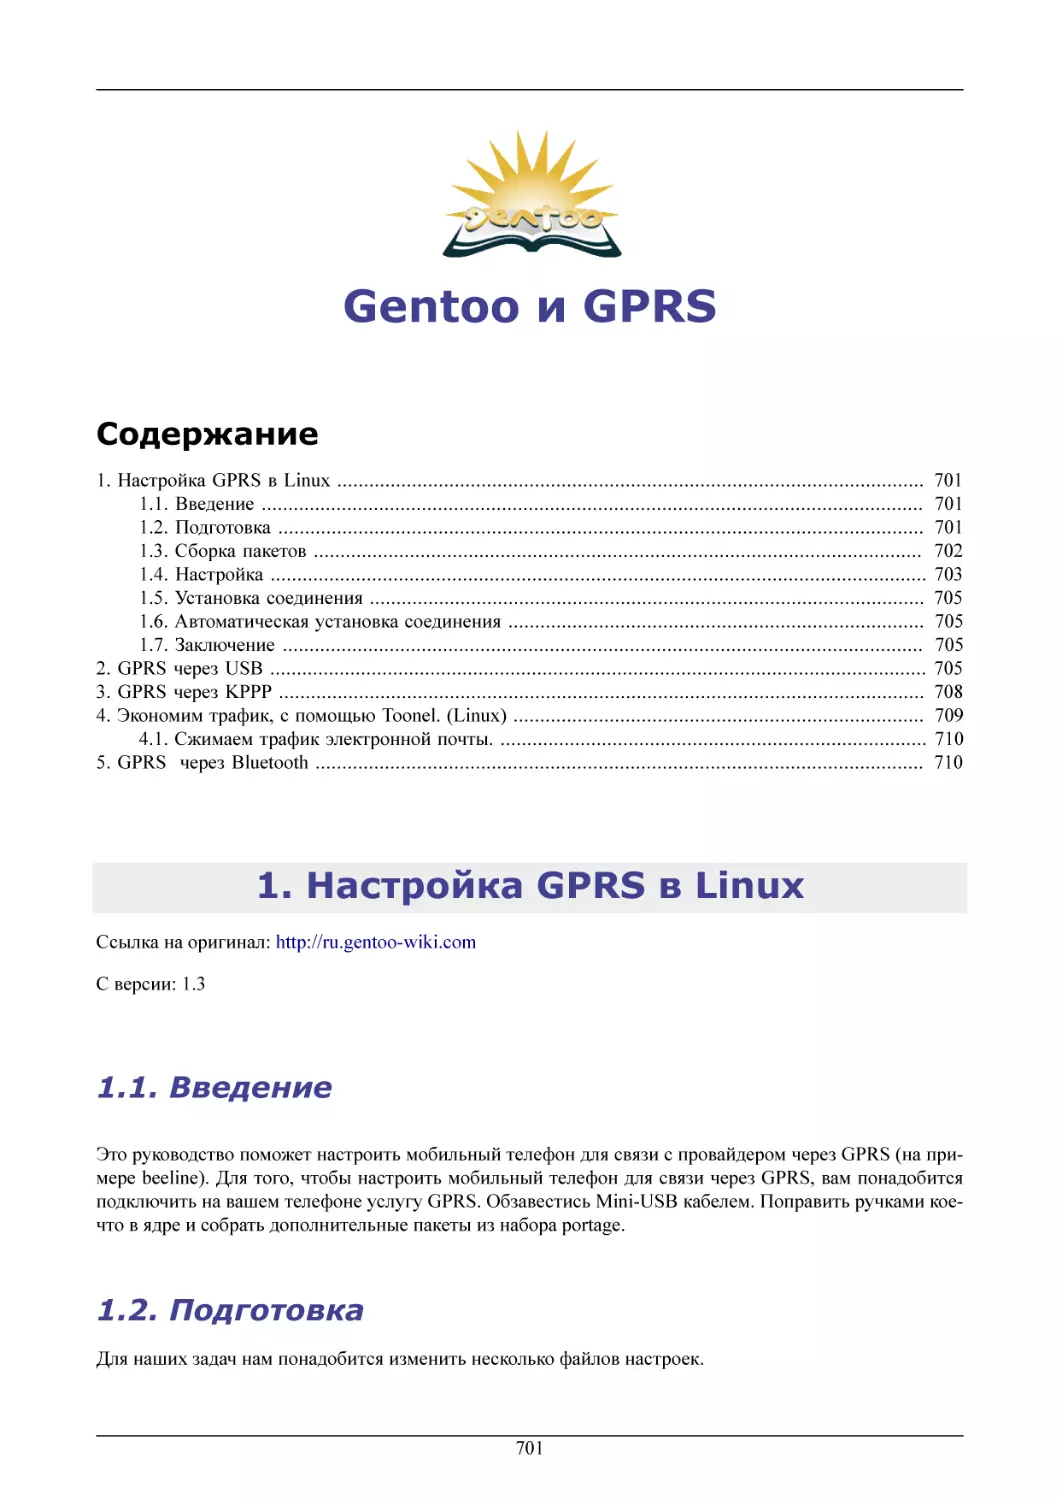 Gentoo и GPRS
Настройка GPRS в Linux
Введение
Подготовка